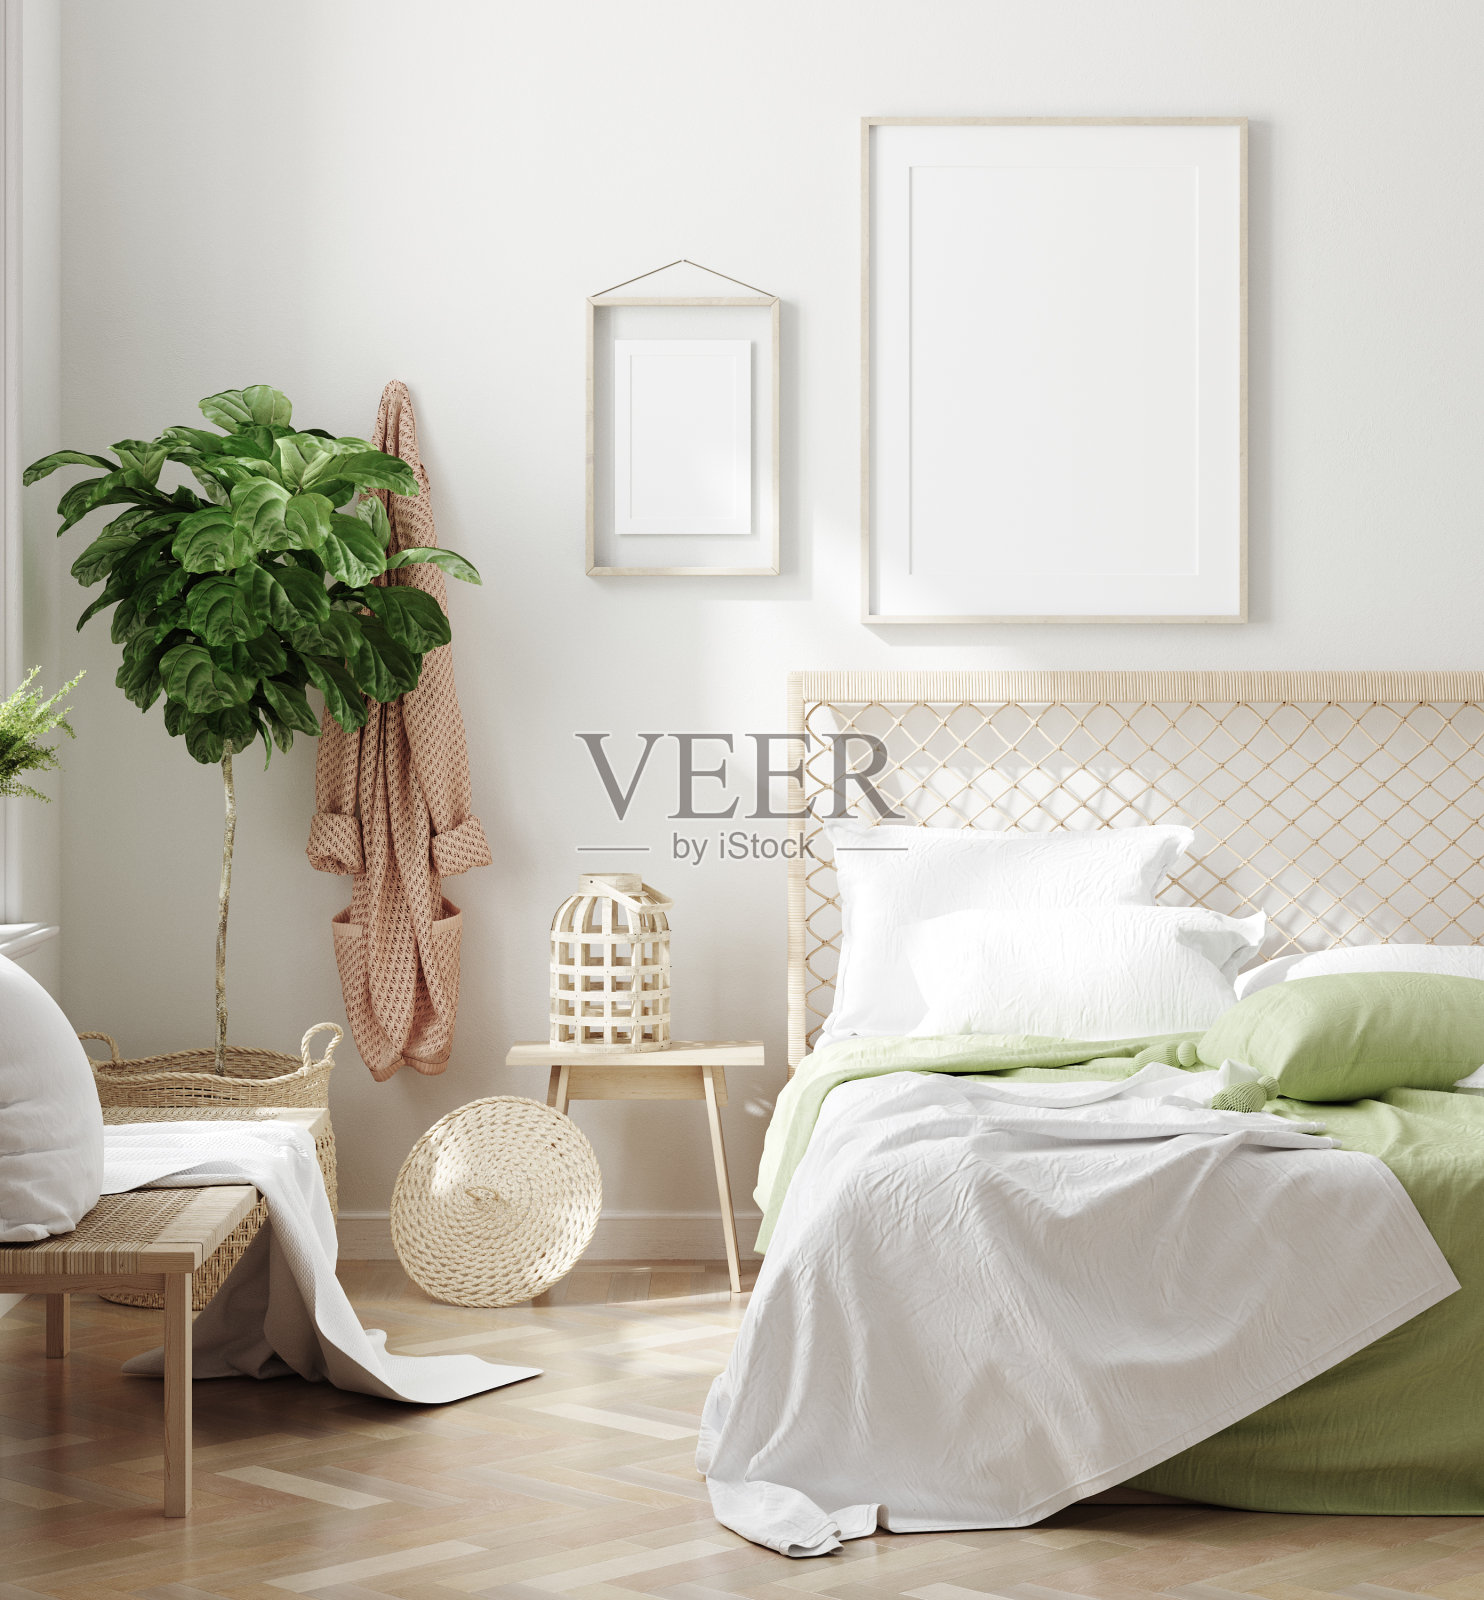 斯堪的纳维亚风格的白色新鲜卧室内部与模型框架在墙上照片摄影图片